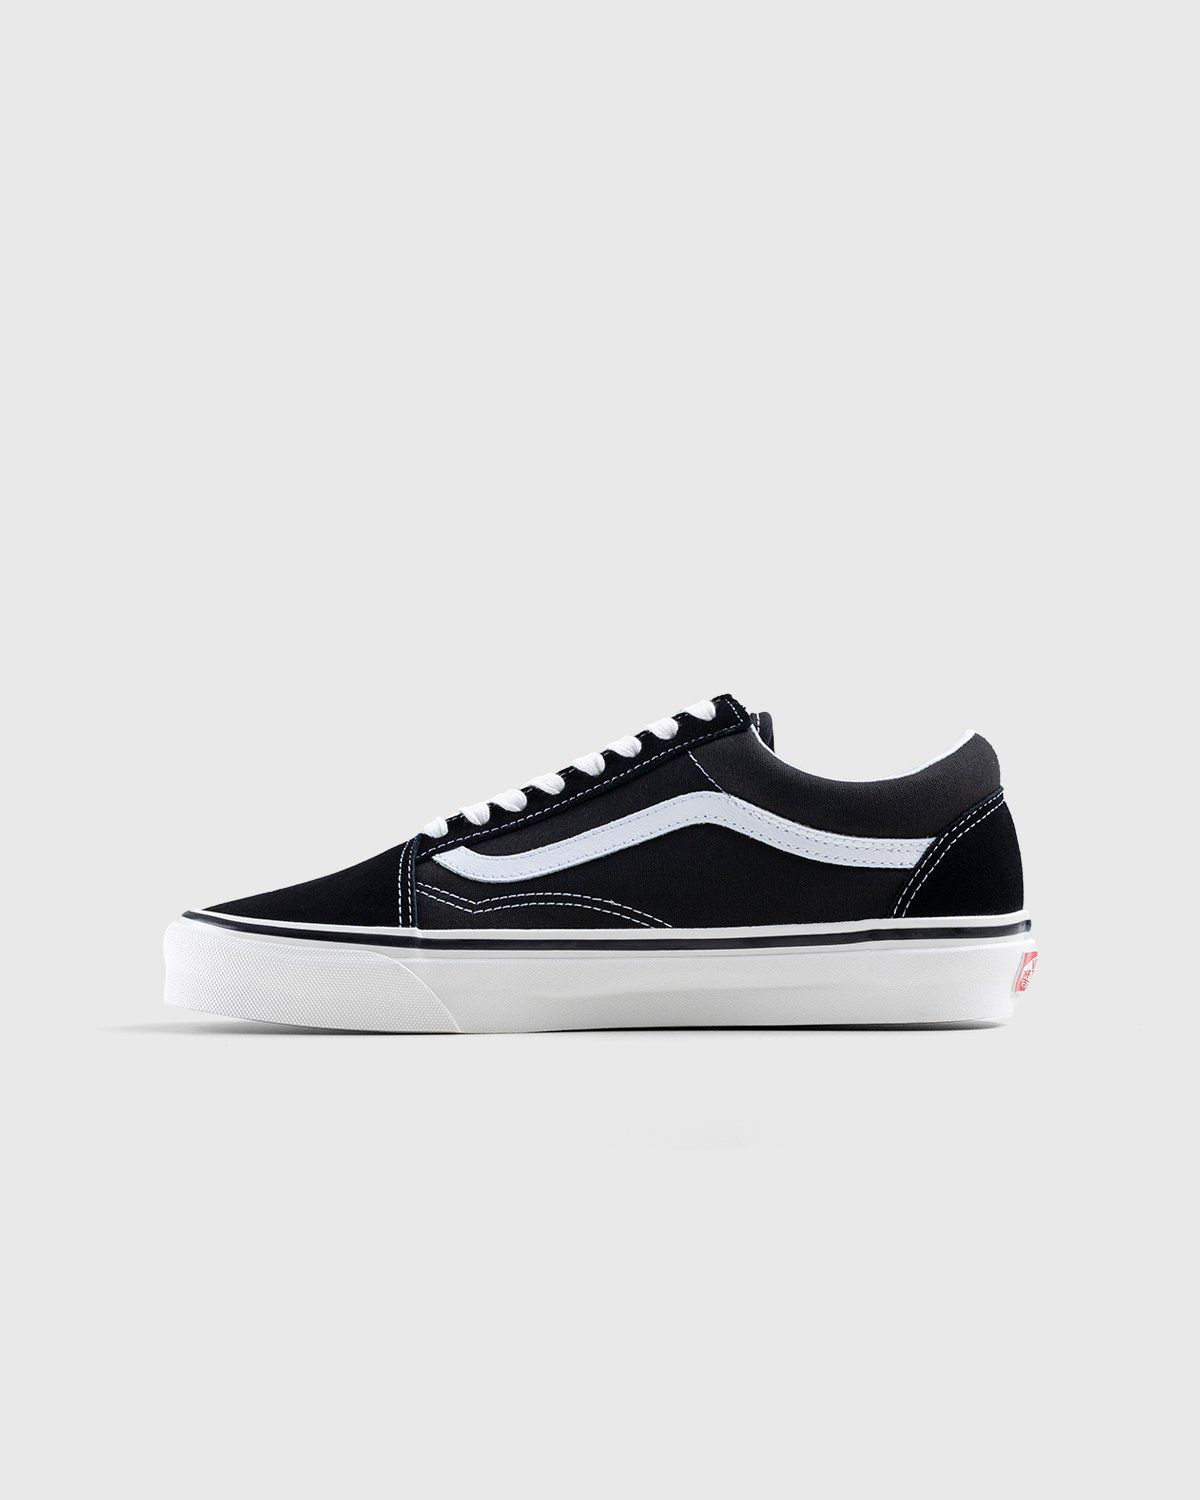 Vans – Anaheim Factory Old Skool 36 DX Black - Sneakers - Black - Image 2